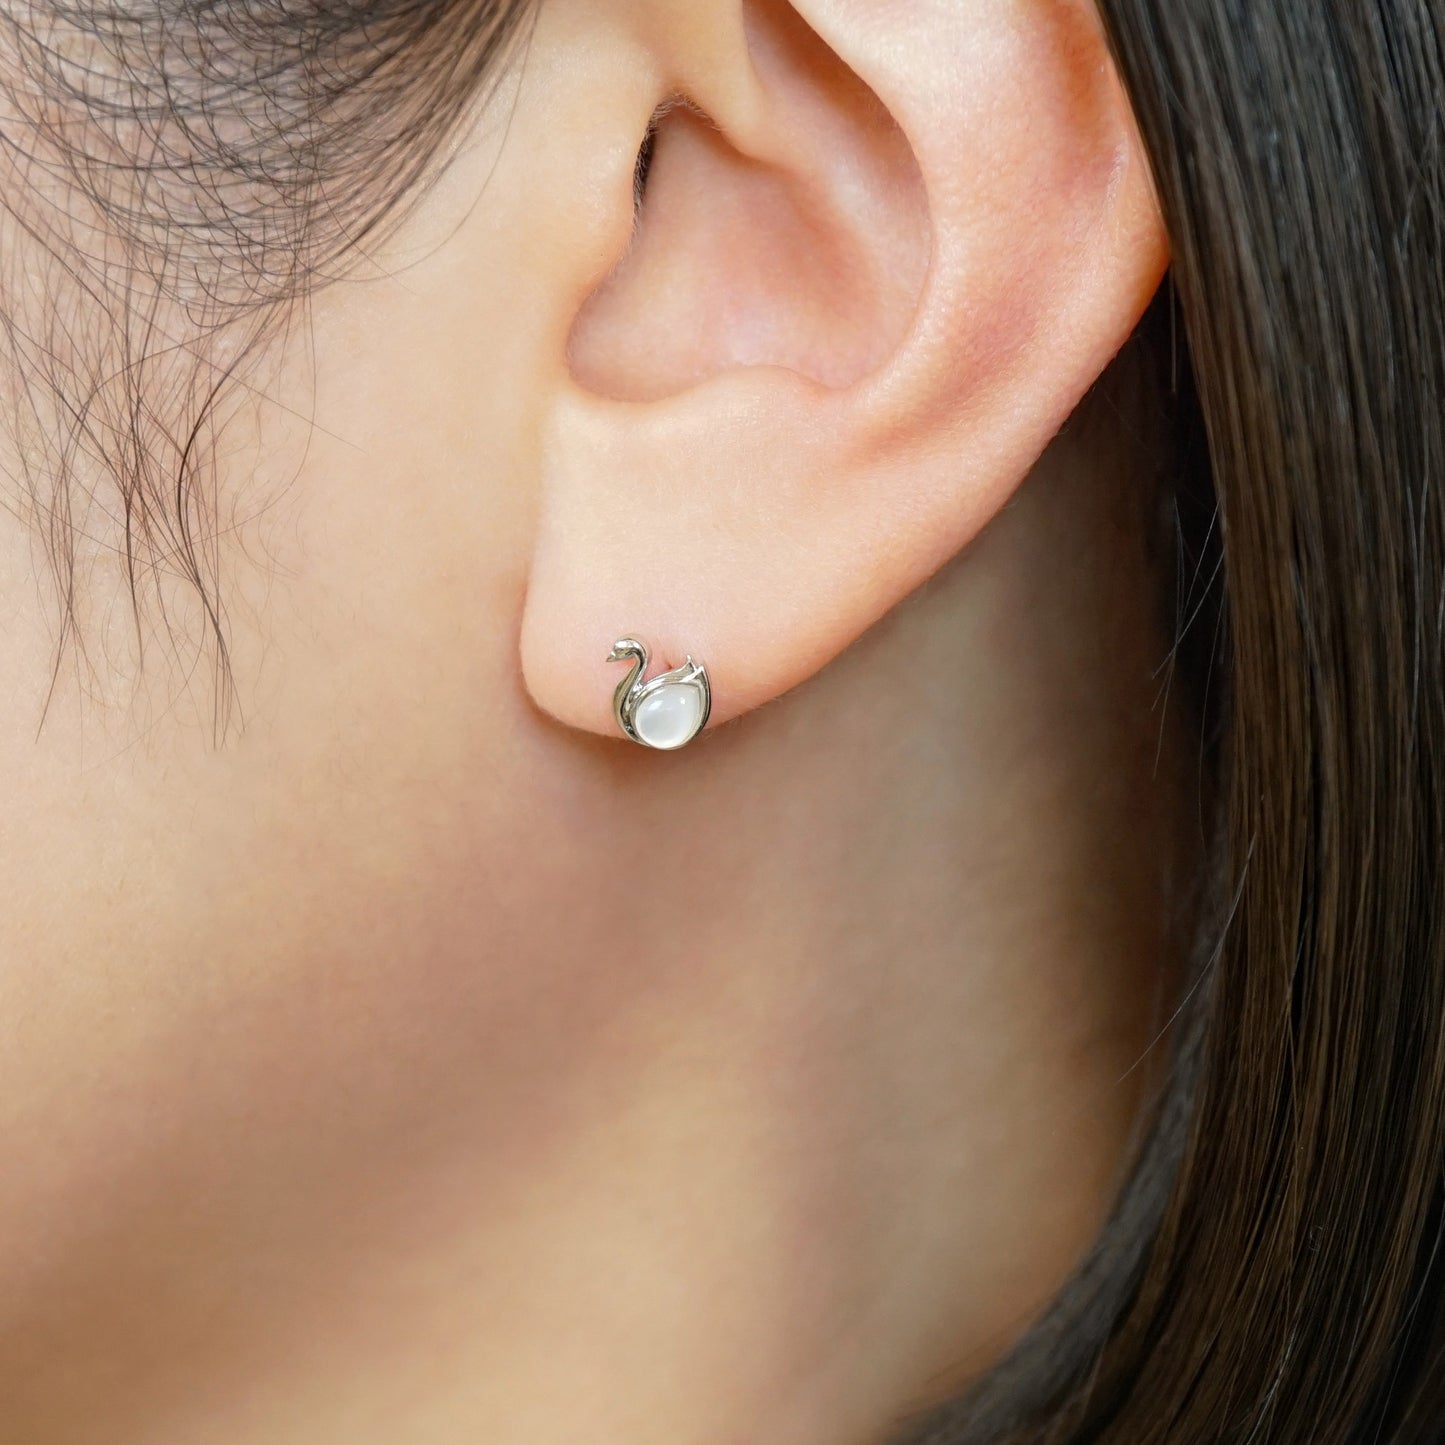 [Solo Earring] 14K/10K Swan Single Earring (White Gold) - Model Image